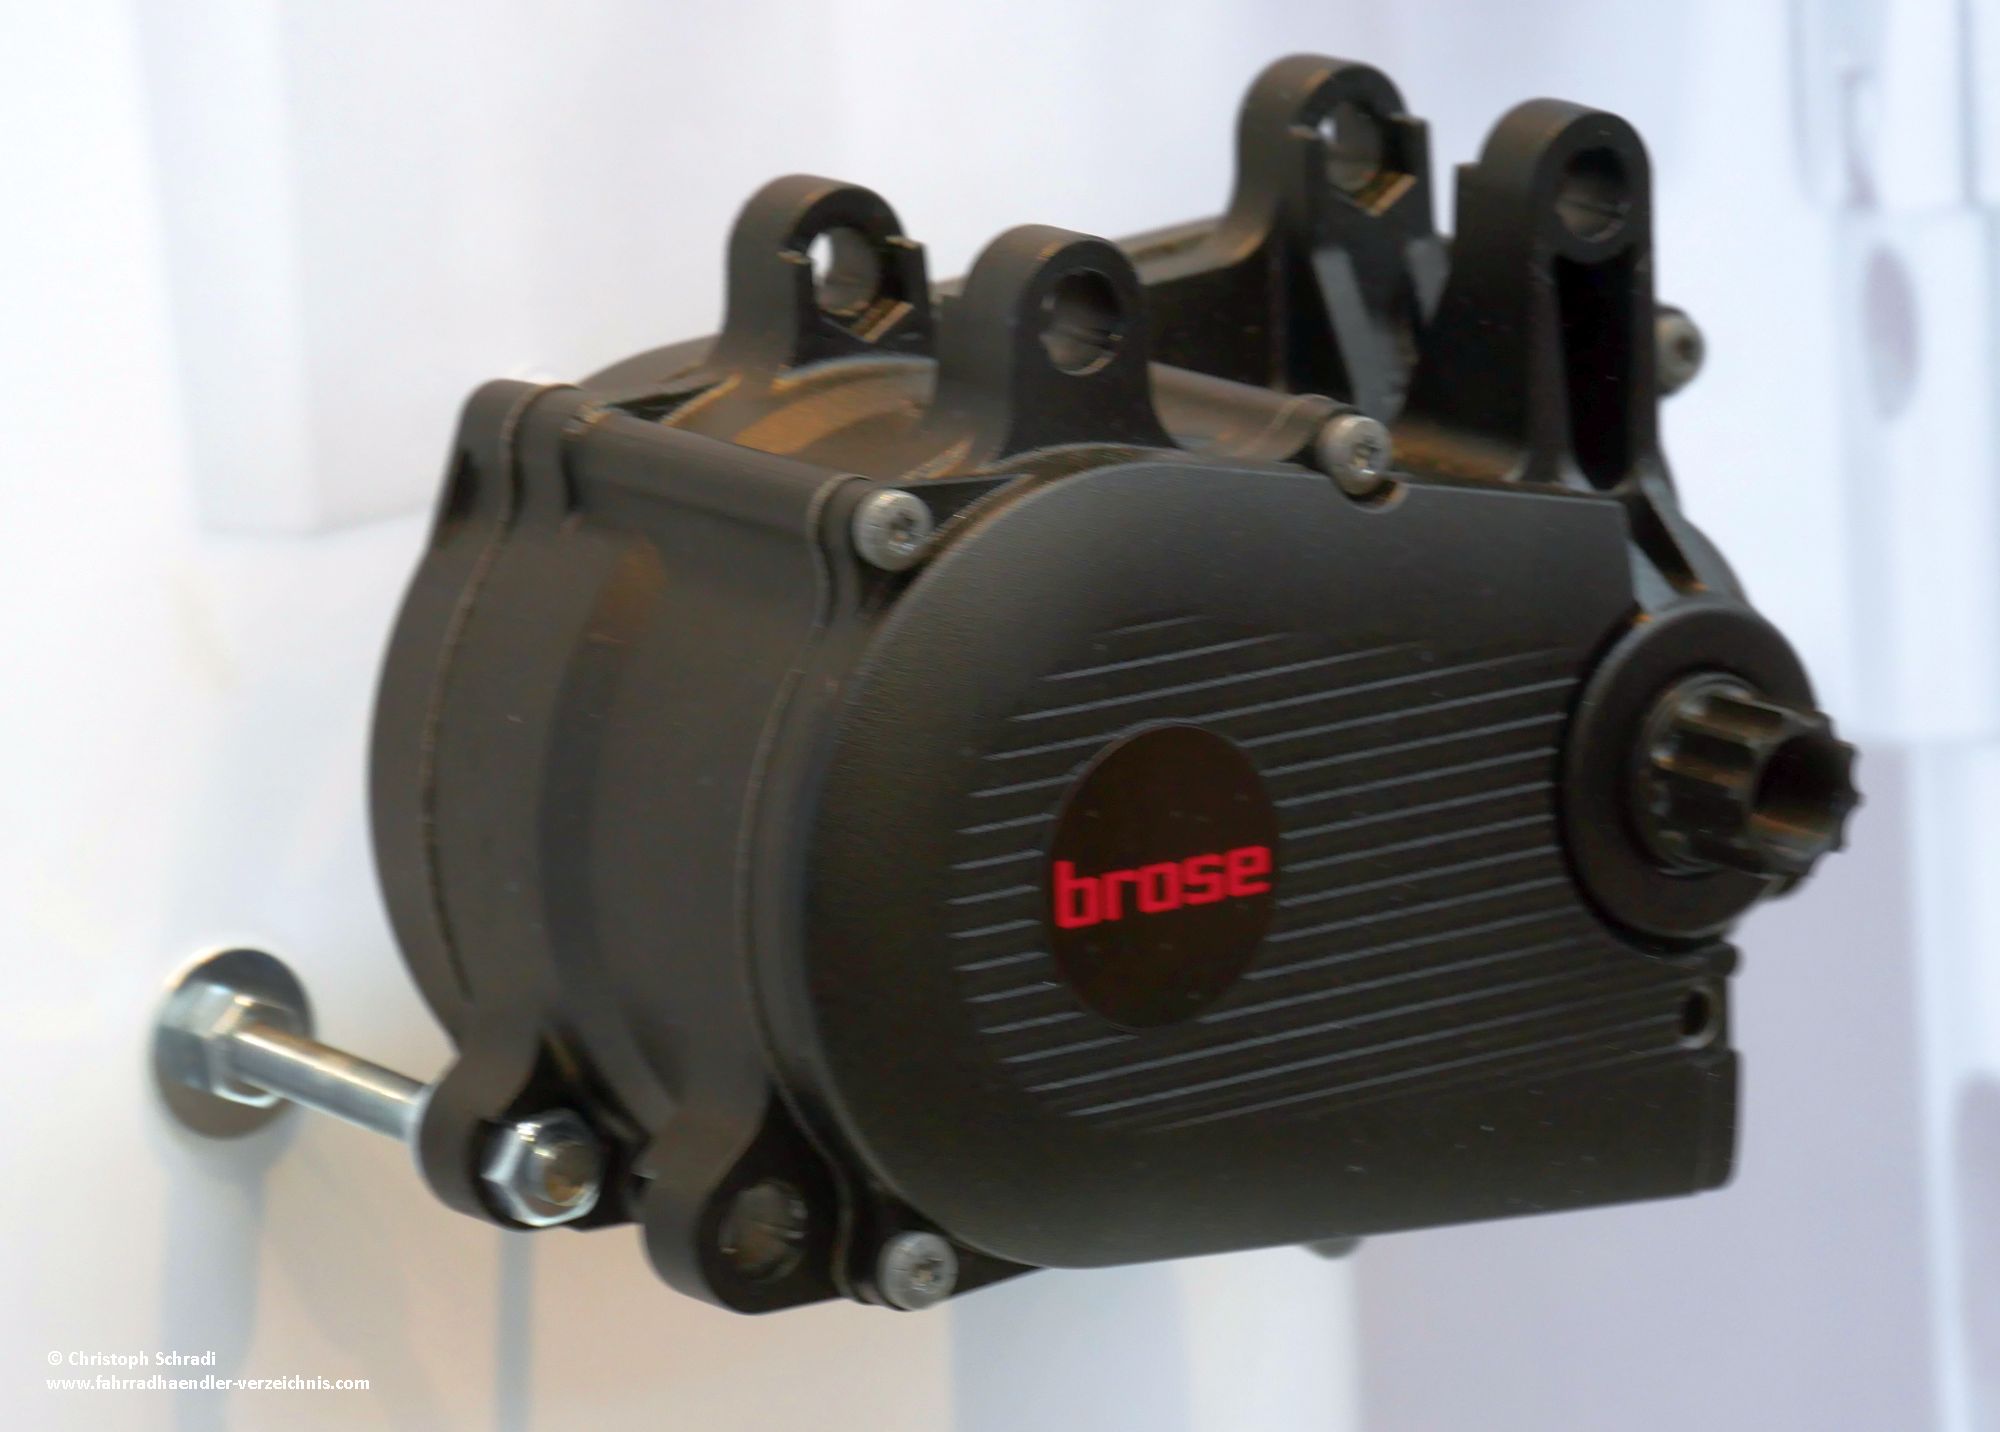 Mit dem neuen Brose S-Drive Mag steht ein großer Konkurrent für 2019 bei Bosch eine große Konkurrenz im sportlichen Bereich an